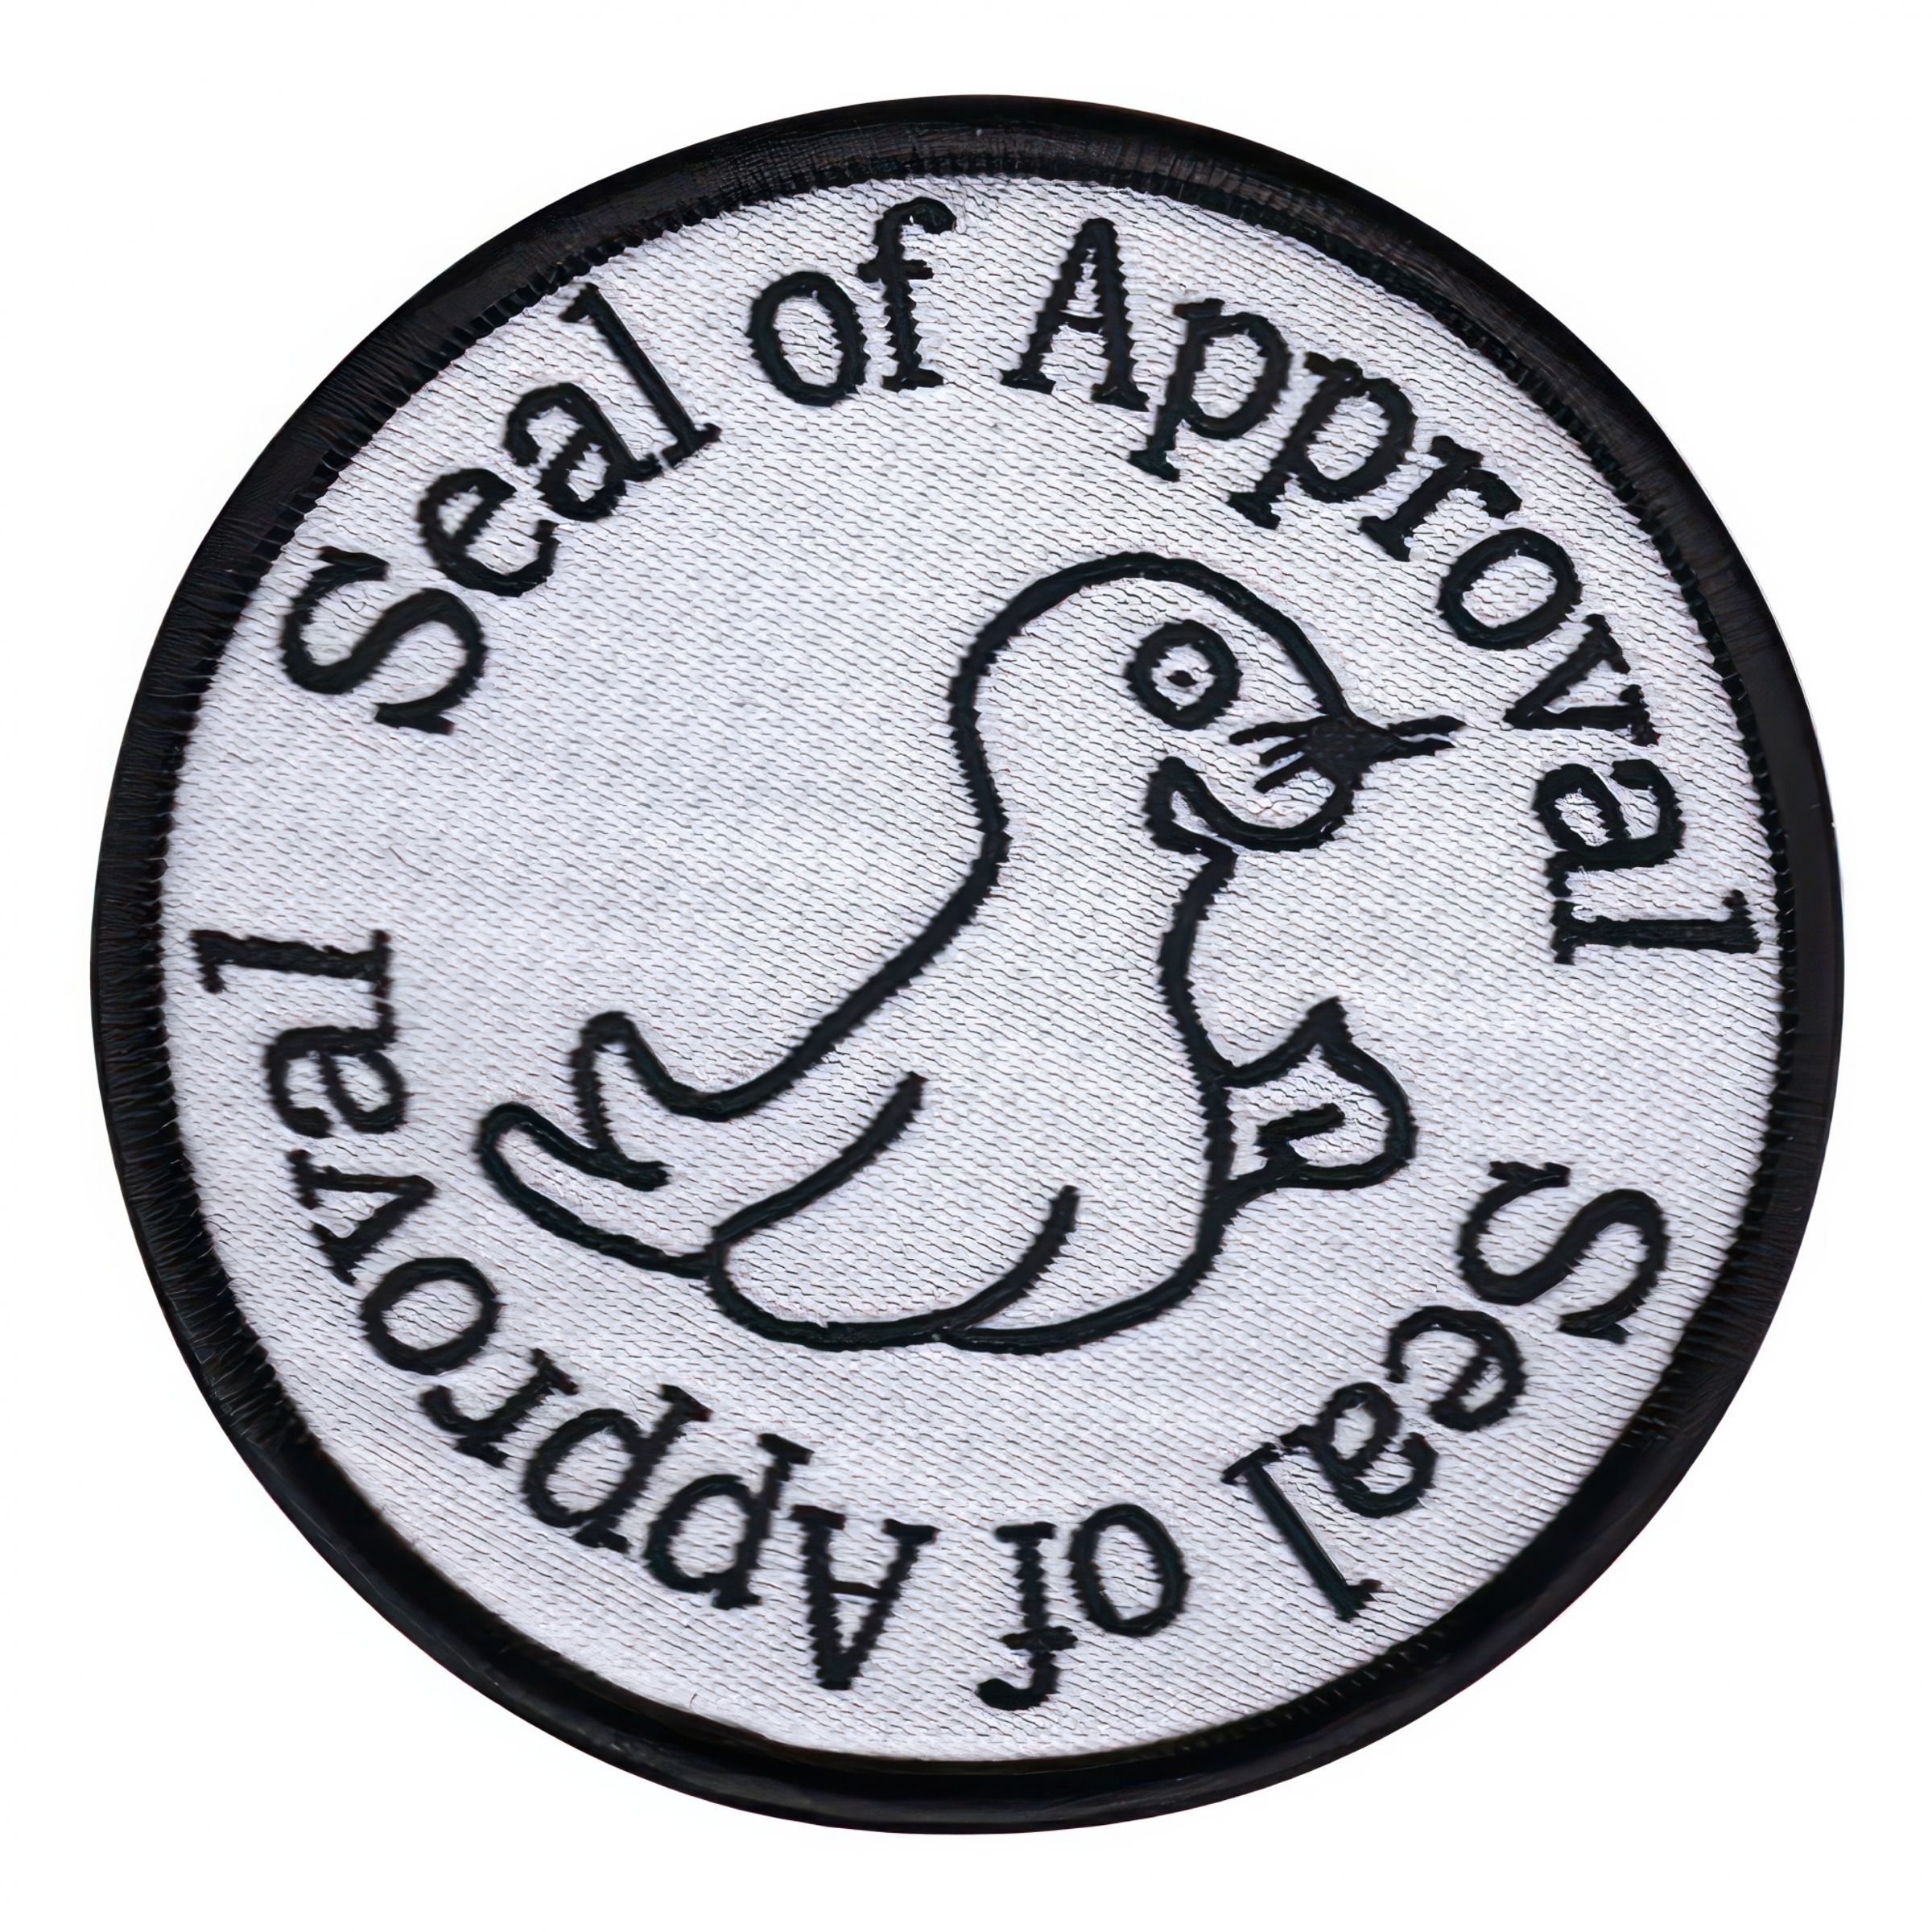 Tygmärke Seal of Approval